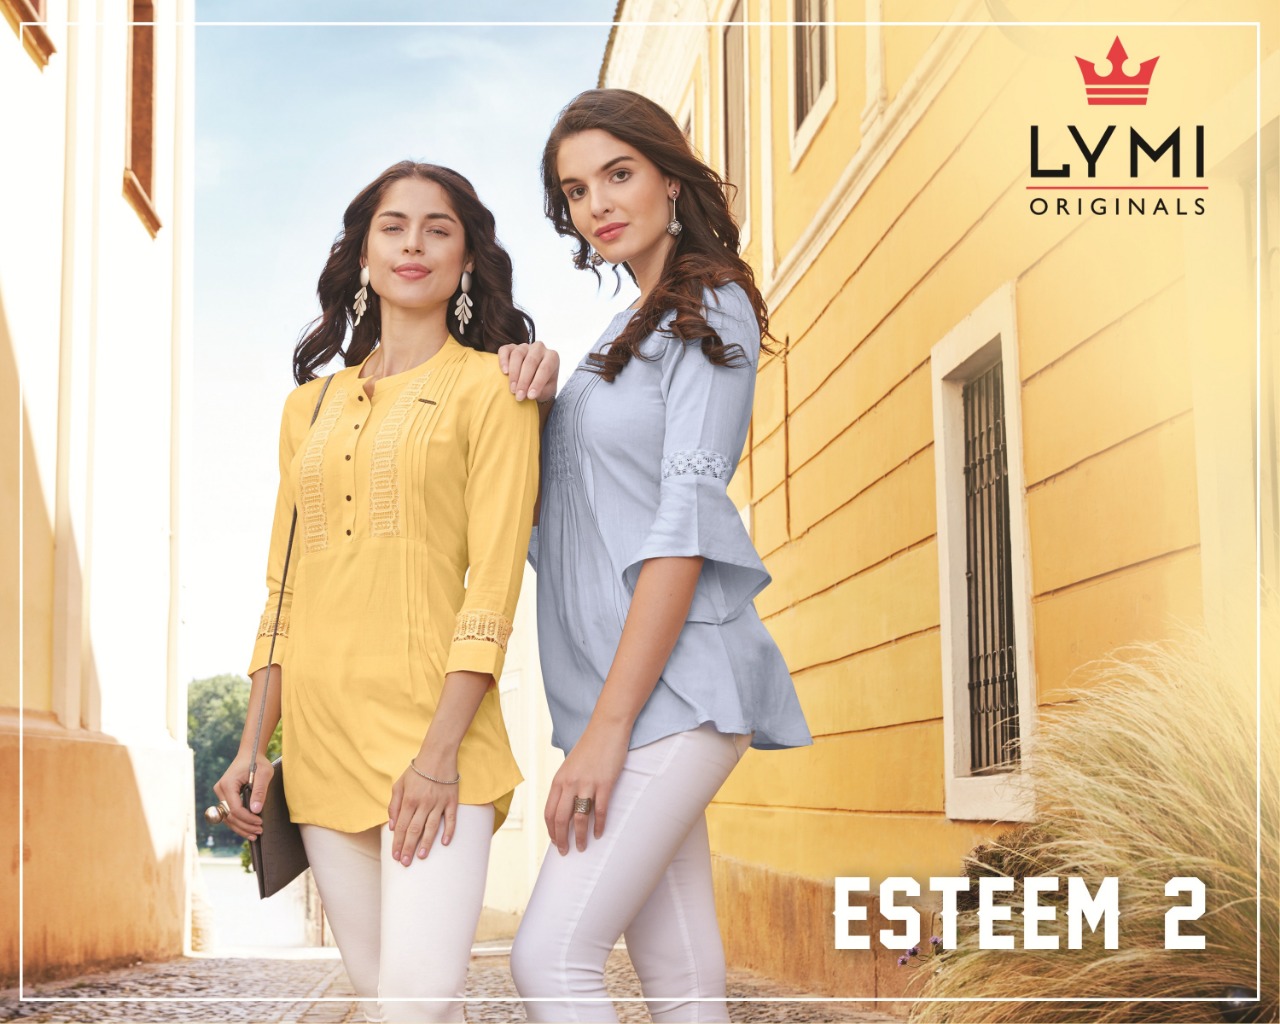 Lymi originals esteem vol 2 fancy rayon short tops collection